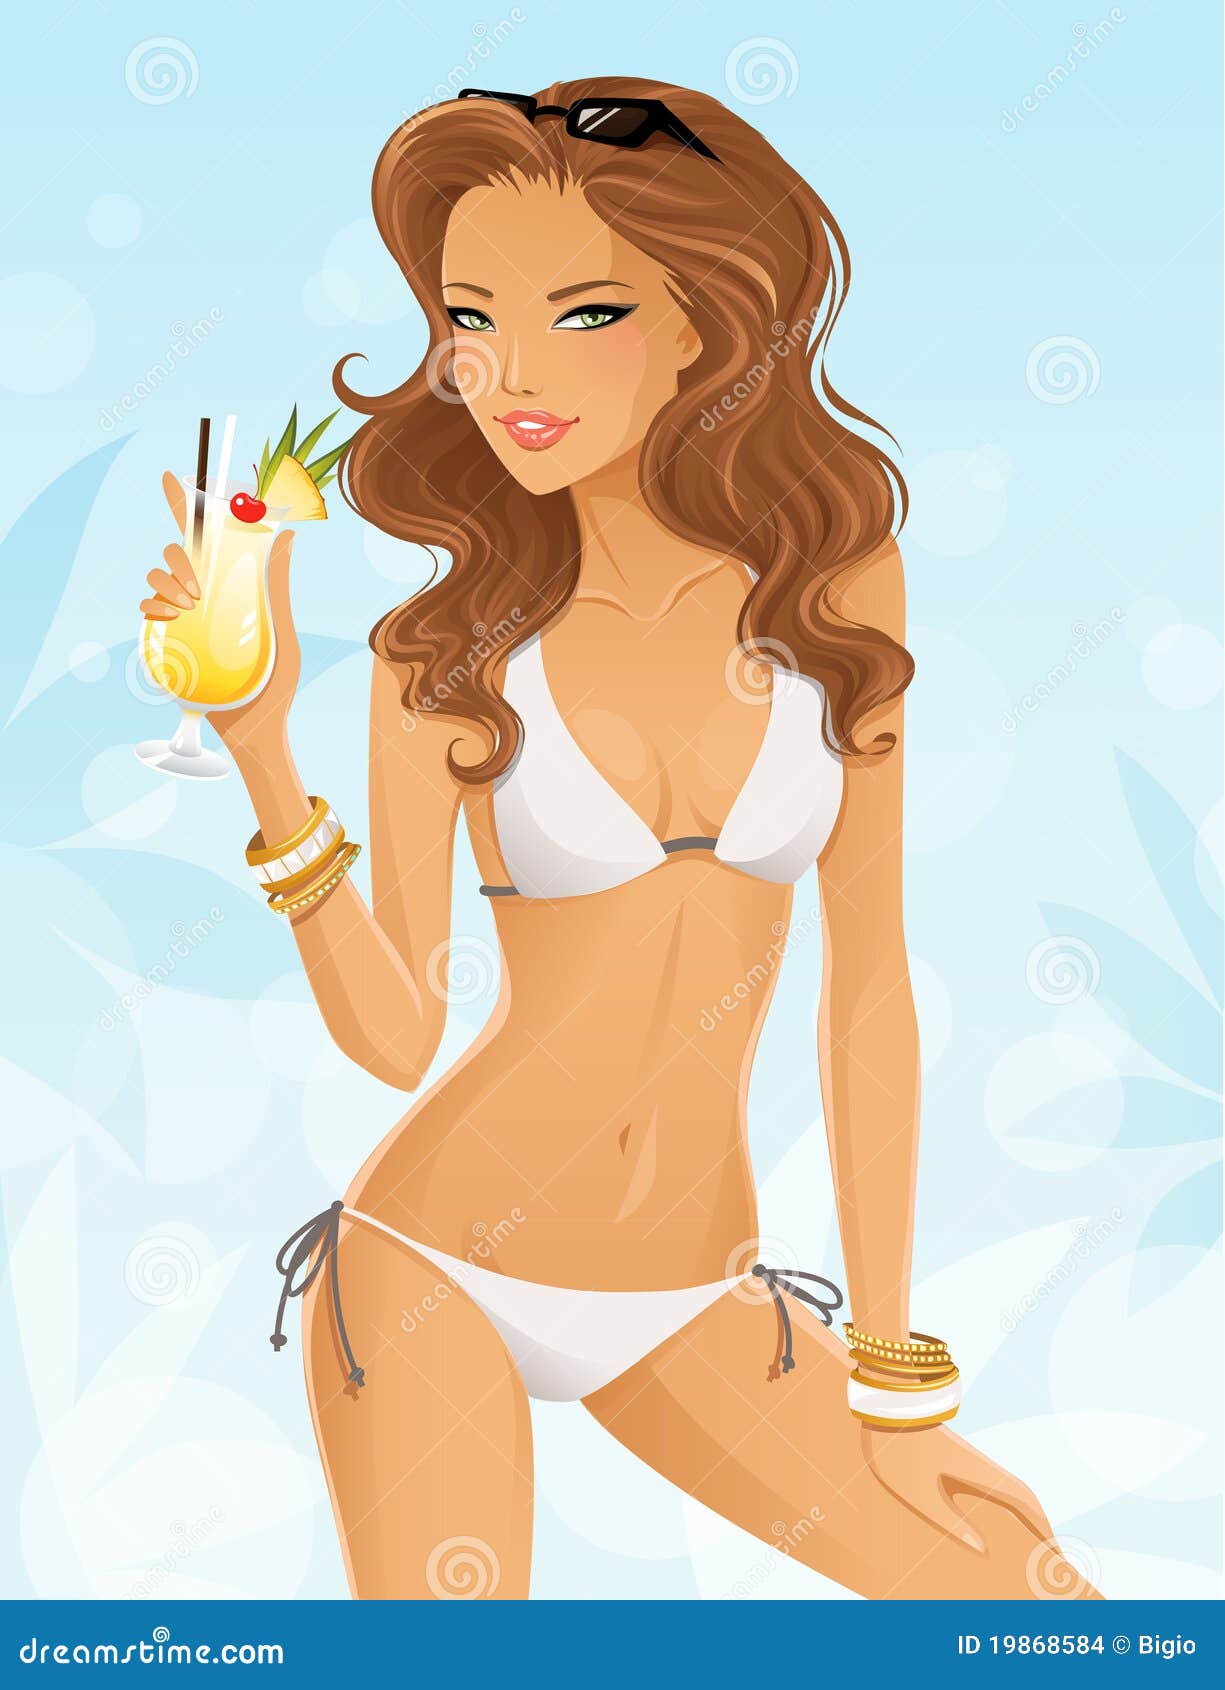 beautiful girl in bikini